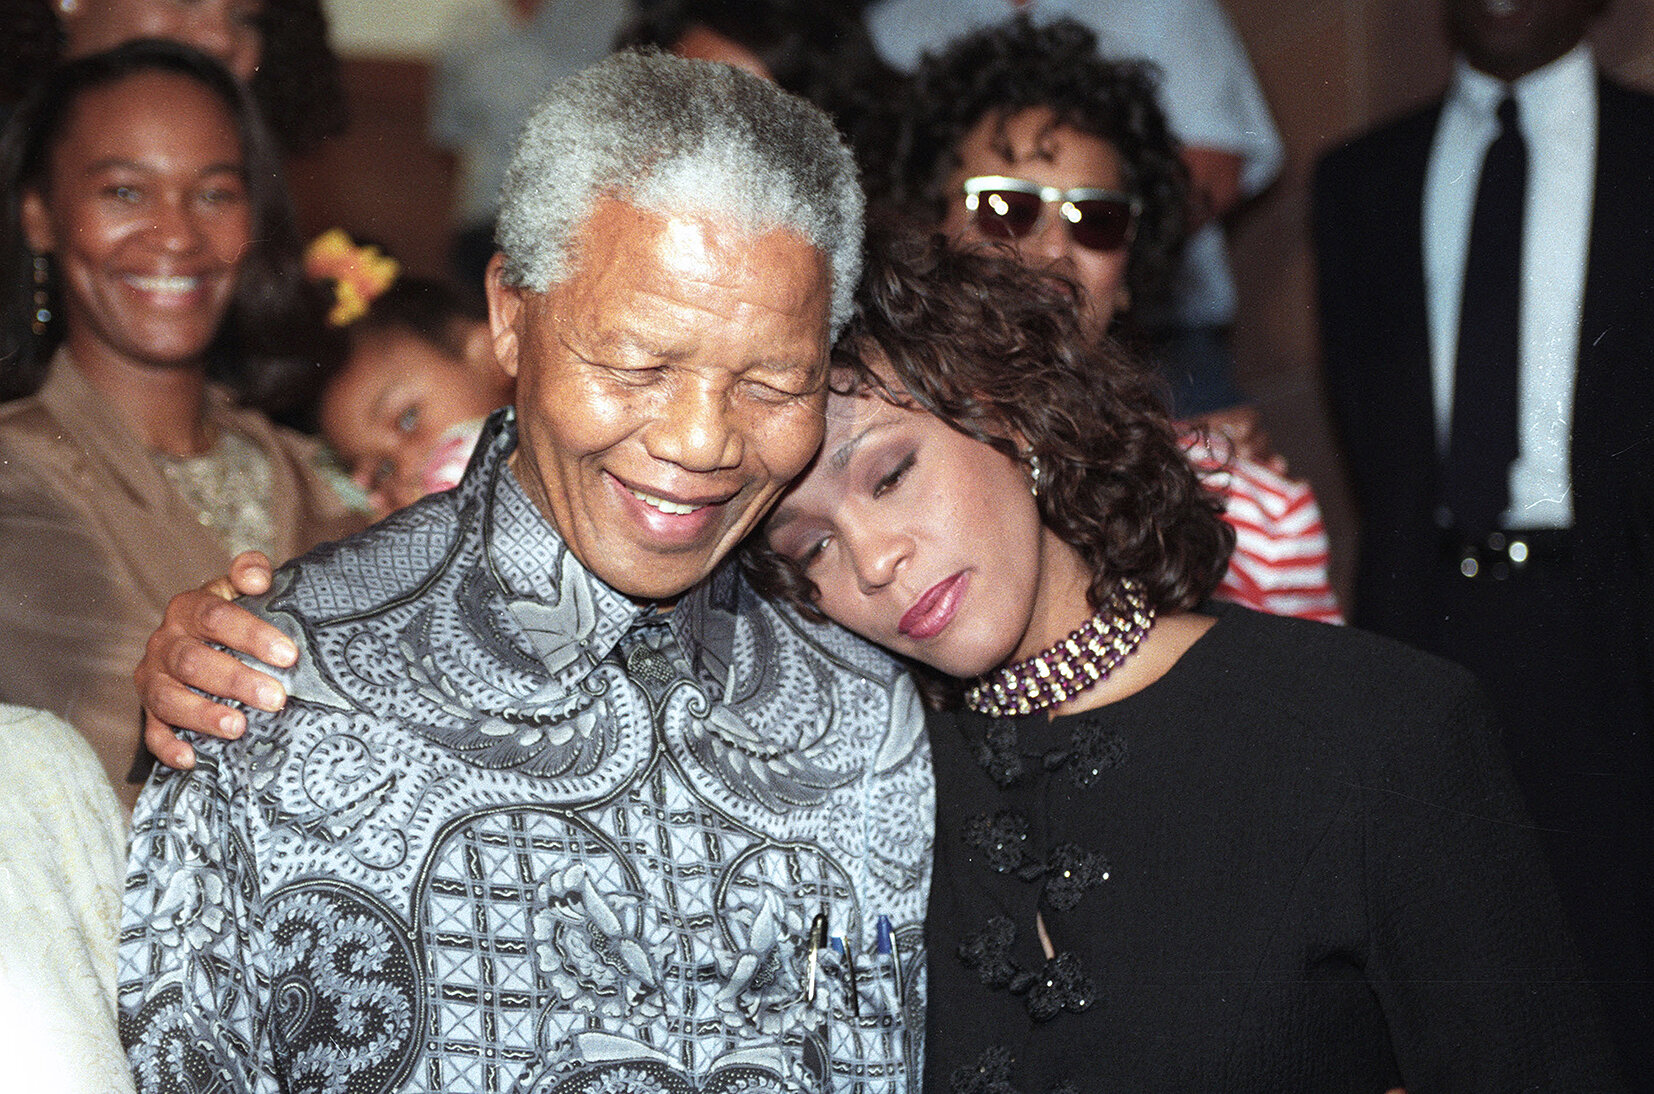 <p>Уитни Хьюстон была сторонником Нельсона Манделы и его движения, направленного против апартеида. В молодости, начиная карьеру модели, она отказывалась работать с агентствами, которые имели деловые отношения с тогдашним правительством ЮАР. А в 1988 году Уитни Хьюстон выступила на благотворительном концерте, посвященном 70-летию Манделы.</p>